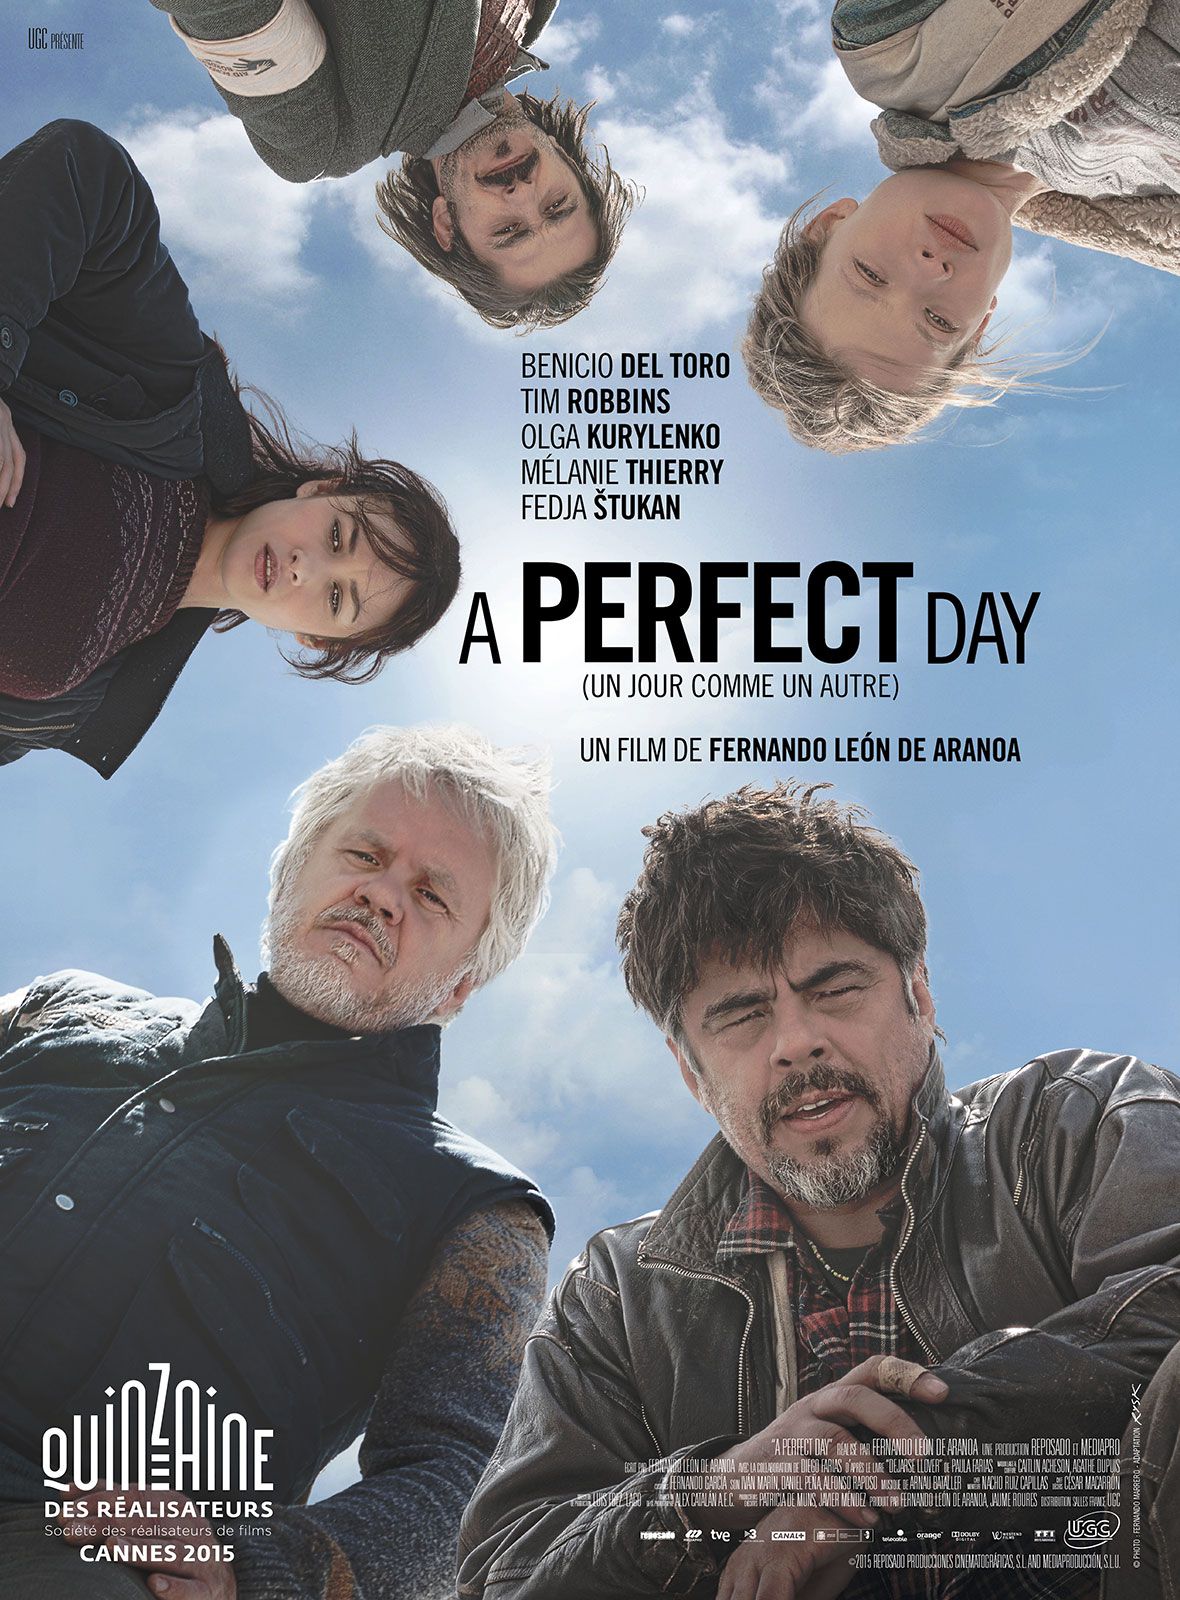 A Perfect Day (Un jour comme un autre) - Film (2015) streaming VF gratuit complet